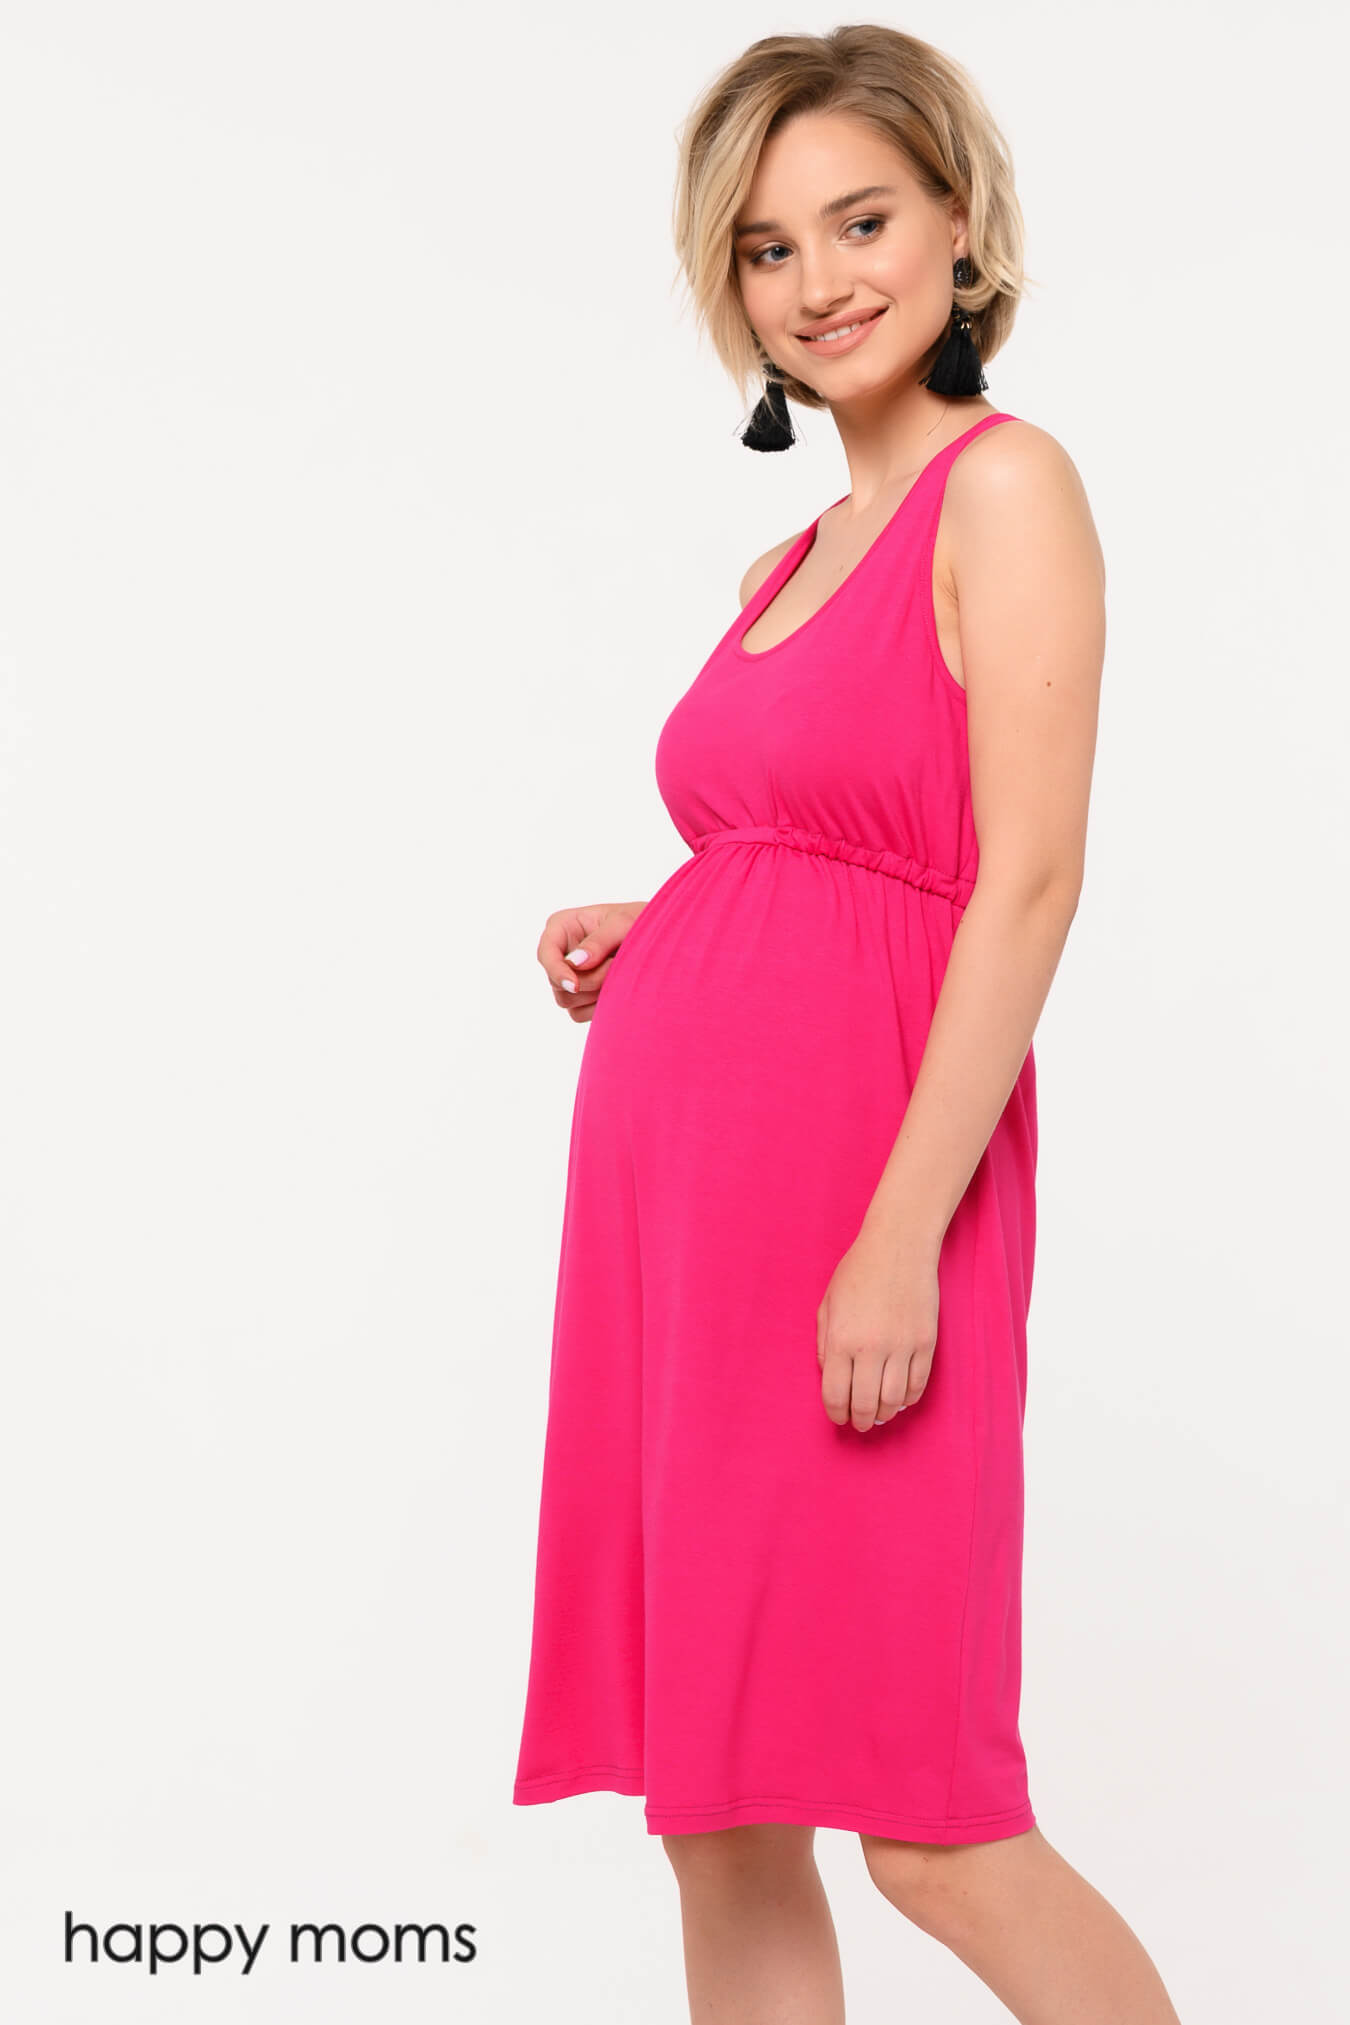 Сарафан для беременных летний женский хлопок платье повседневное домашнее трикотажное в роддом / Happy Moms